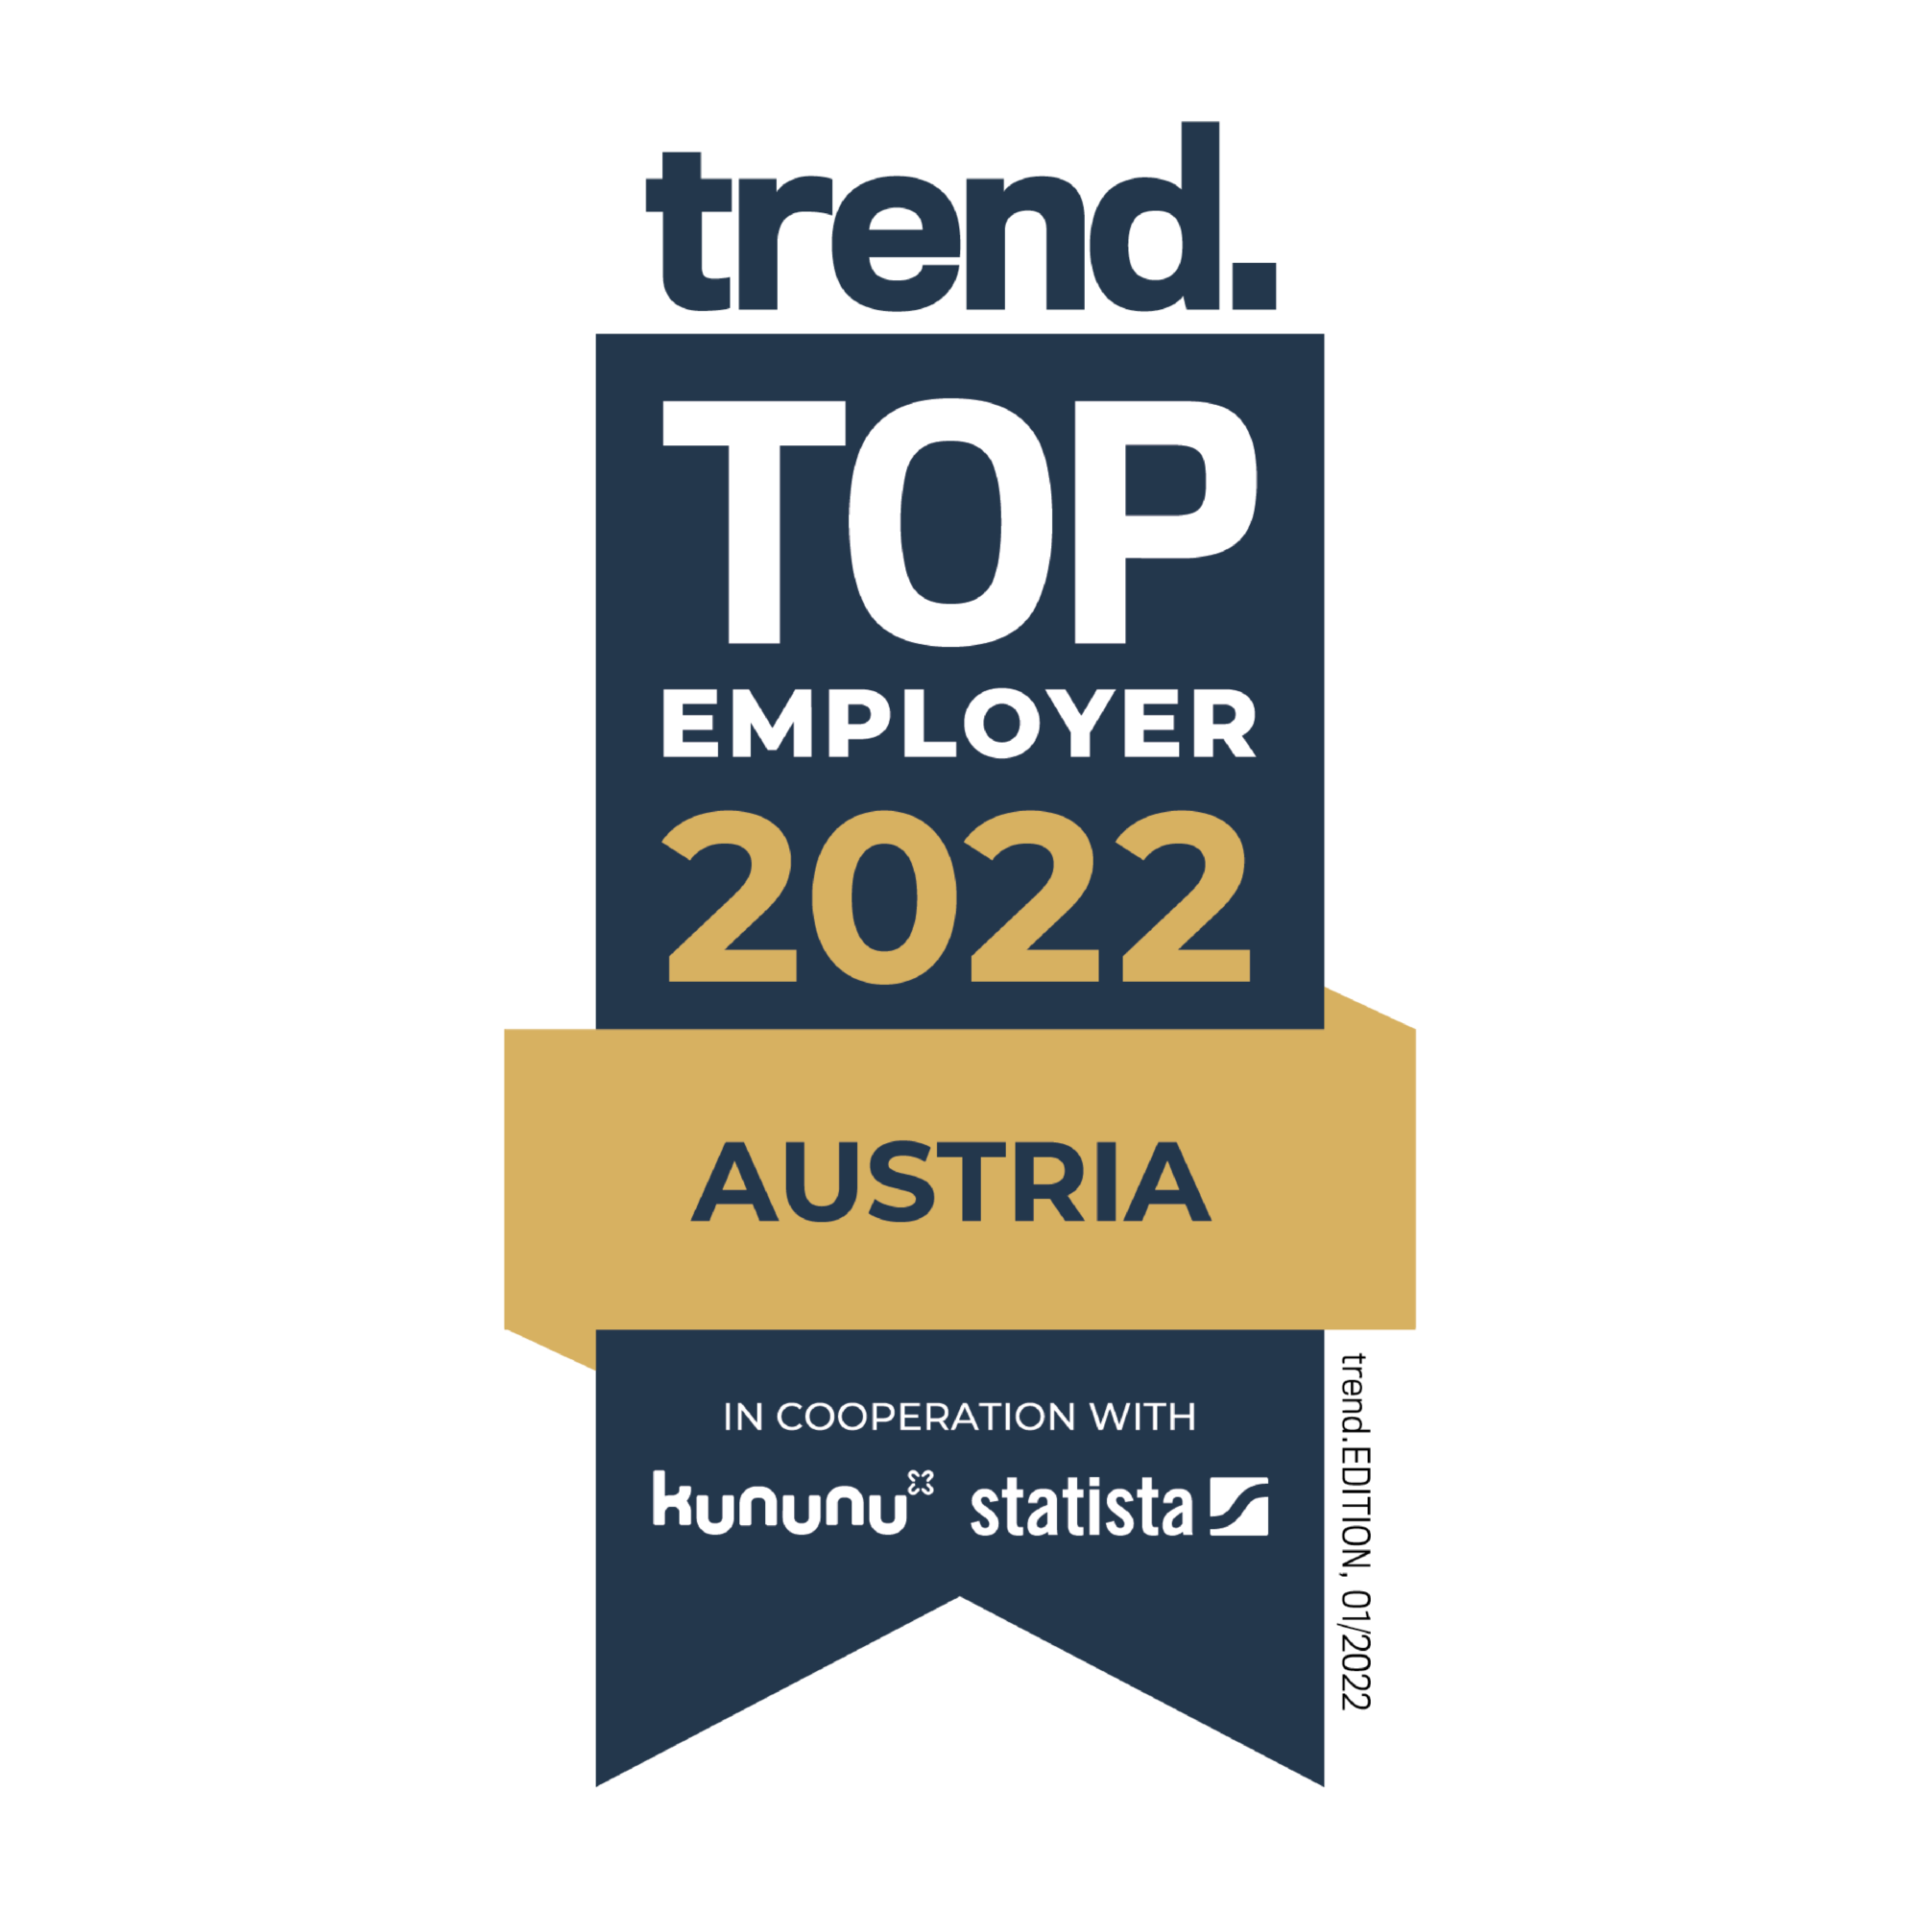 Mejor empleador en 2022 - Austria